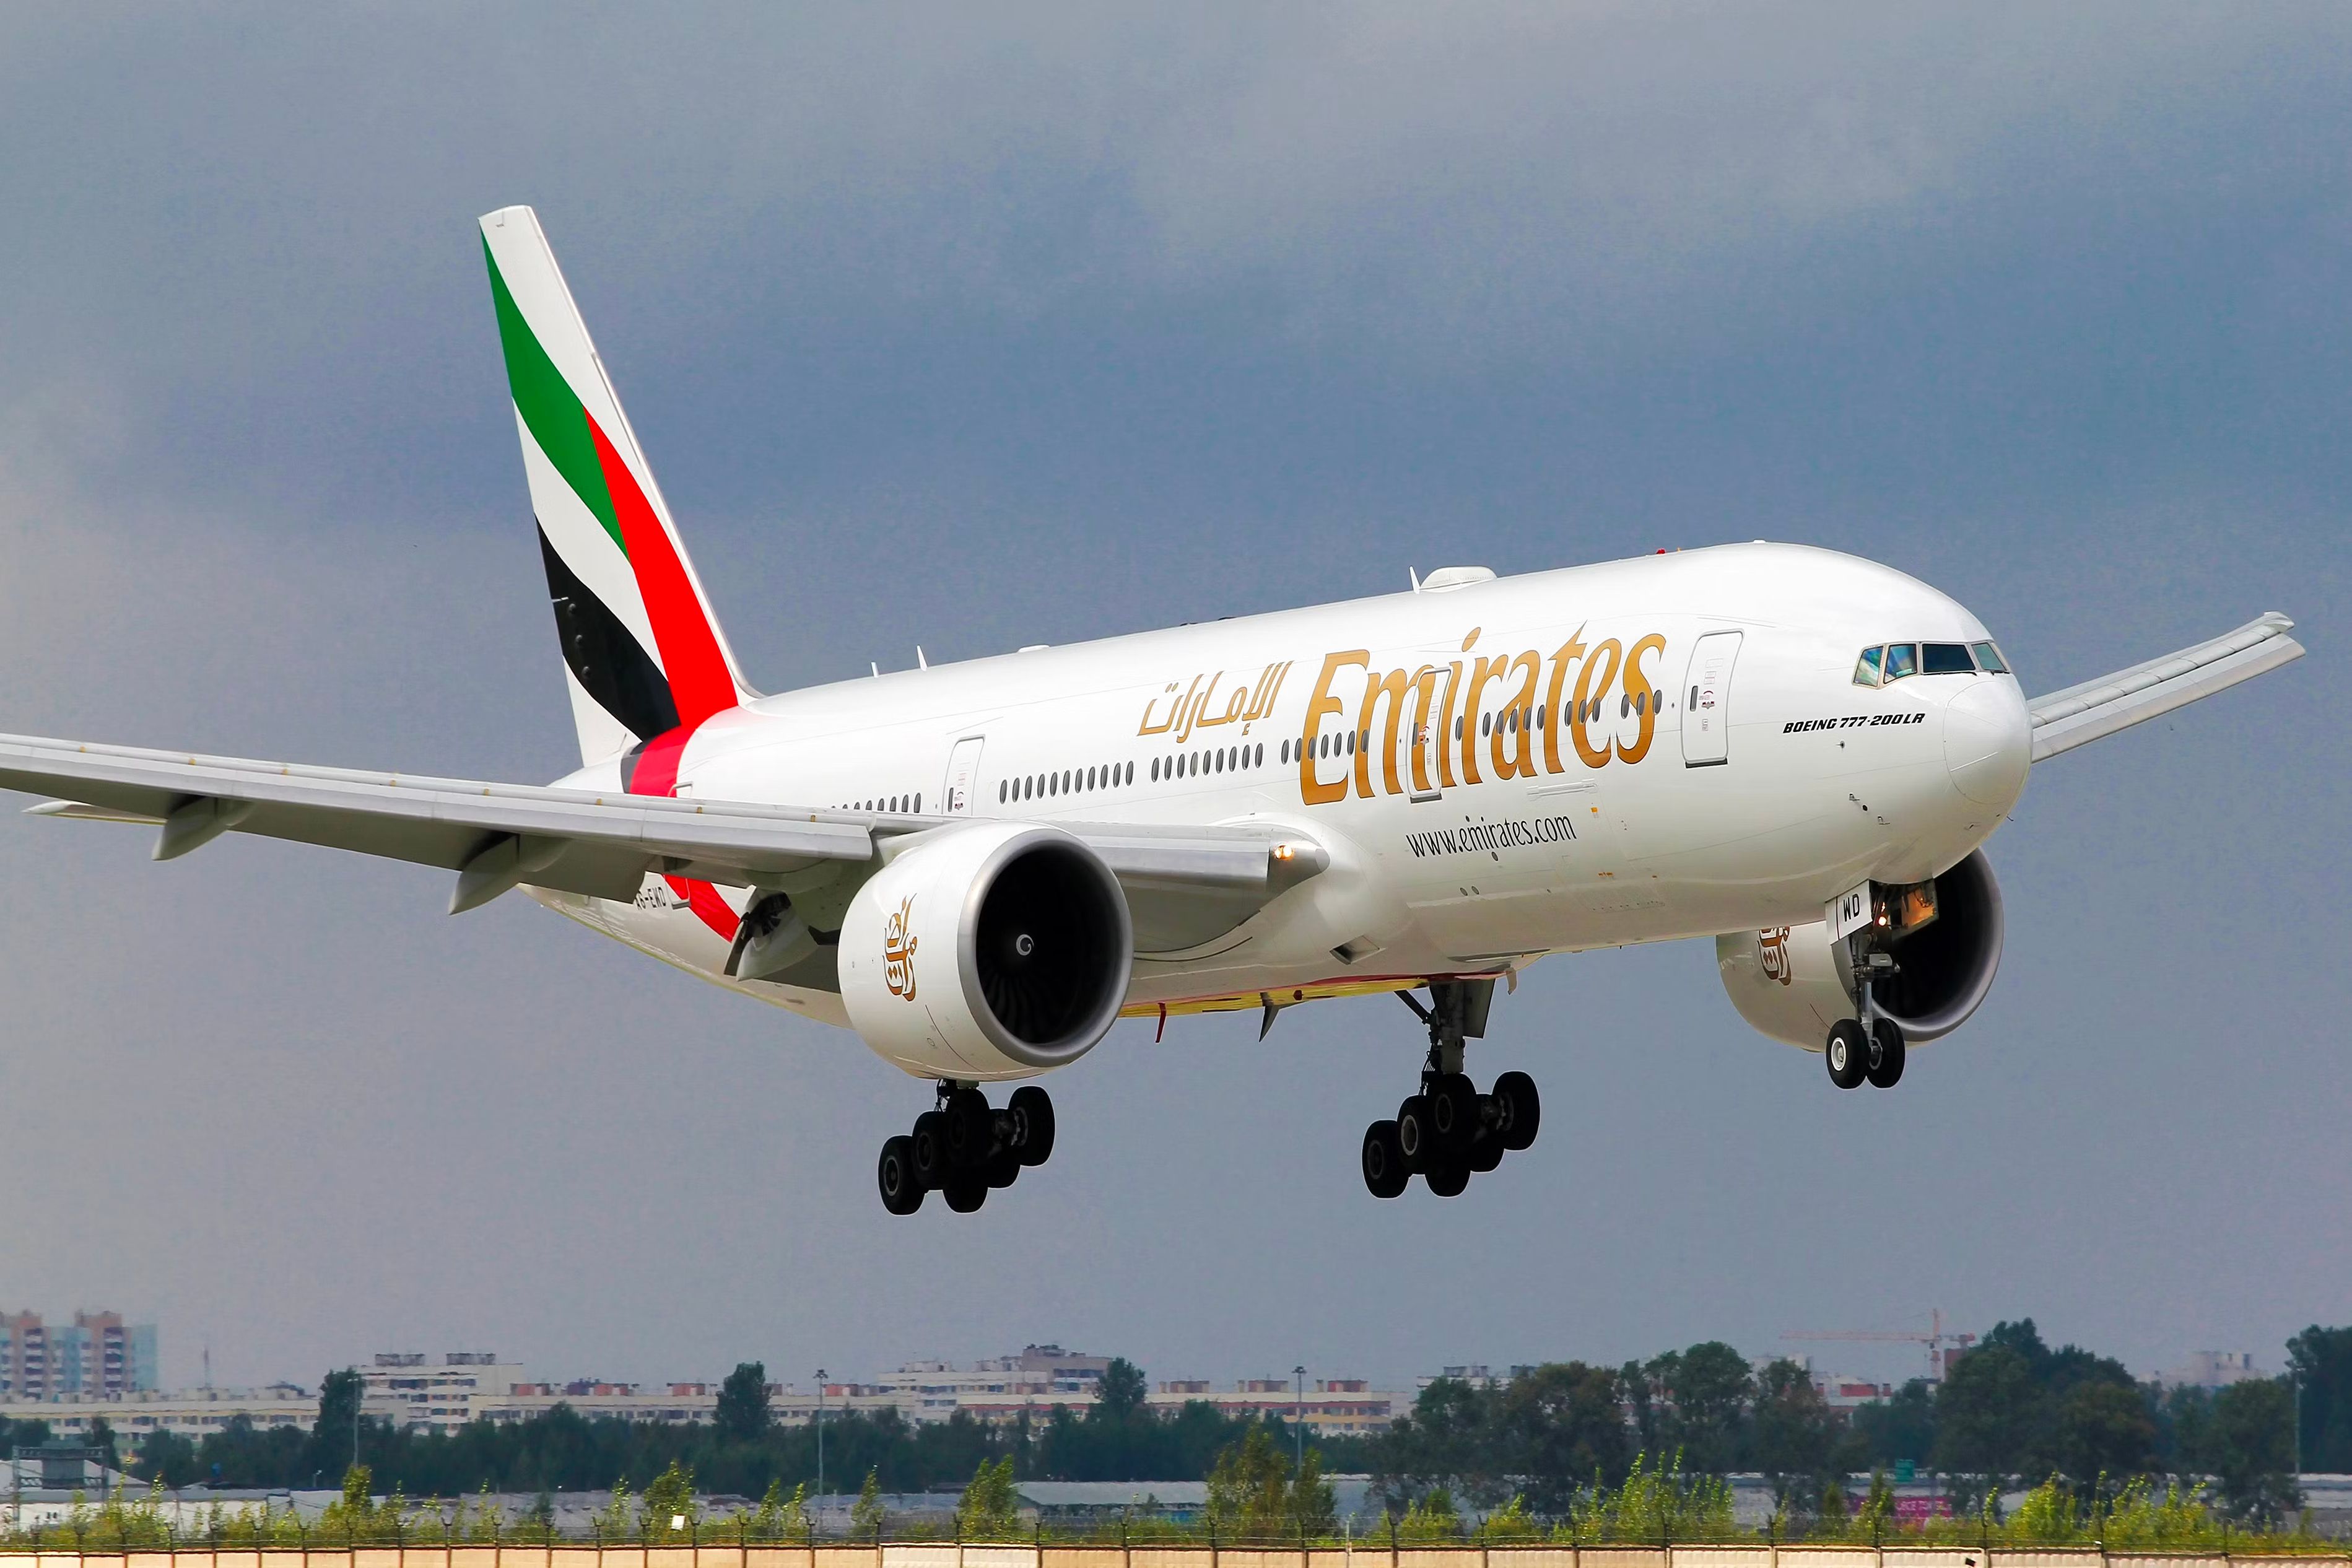 Emirates Boeing 777-200LR landing